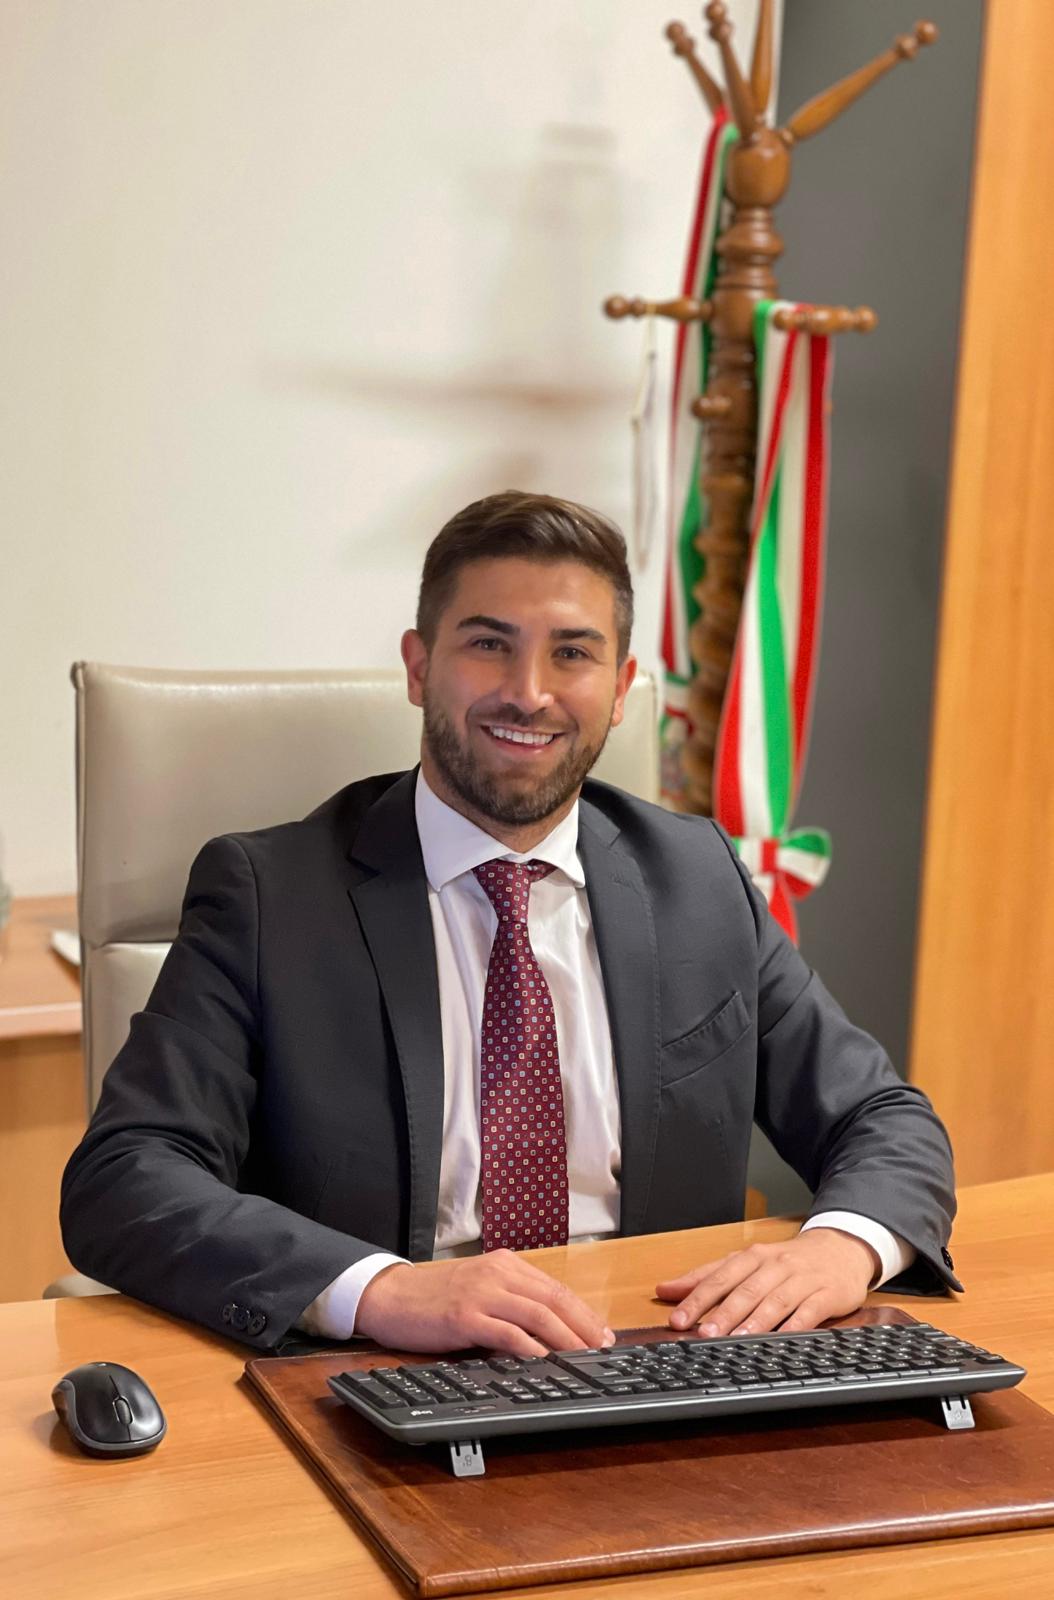 Direzione Treviso, Gabriele (sindaco Tribiano): “Interventi normativi per i giovani amministratori”